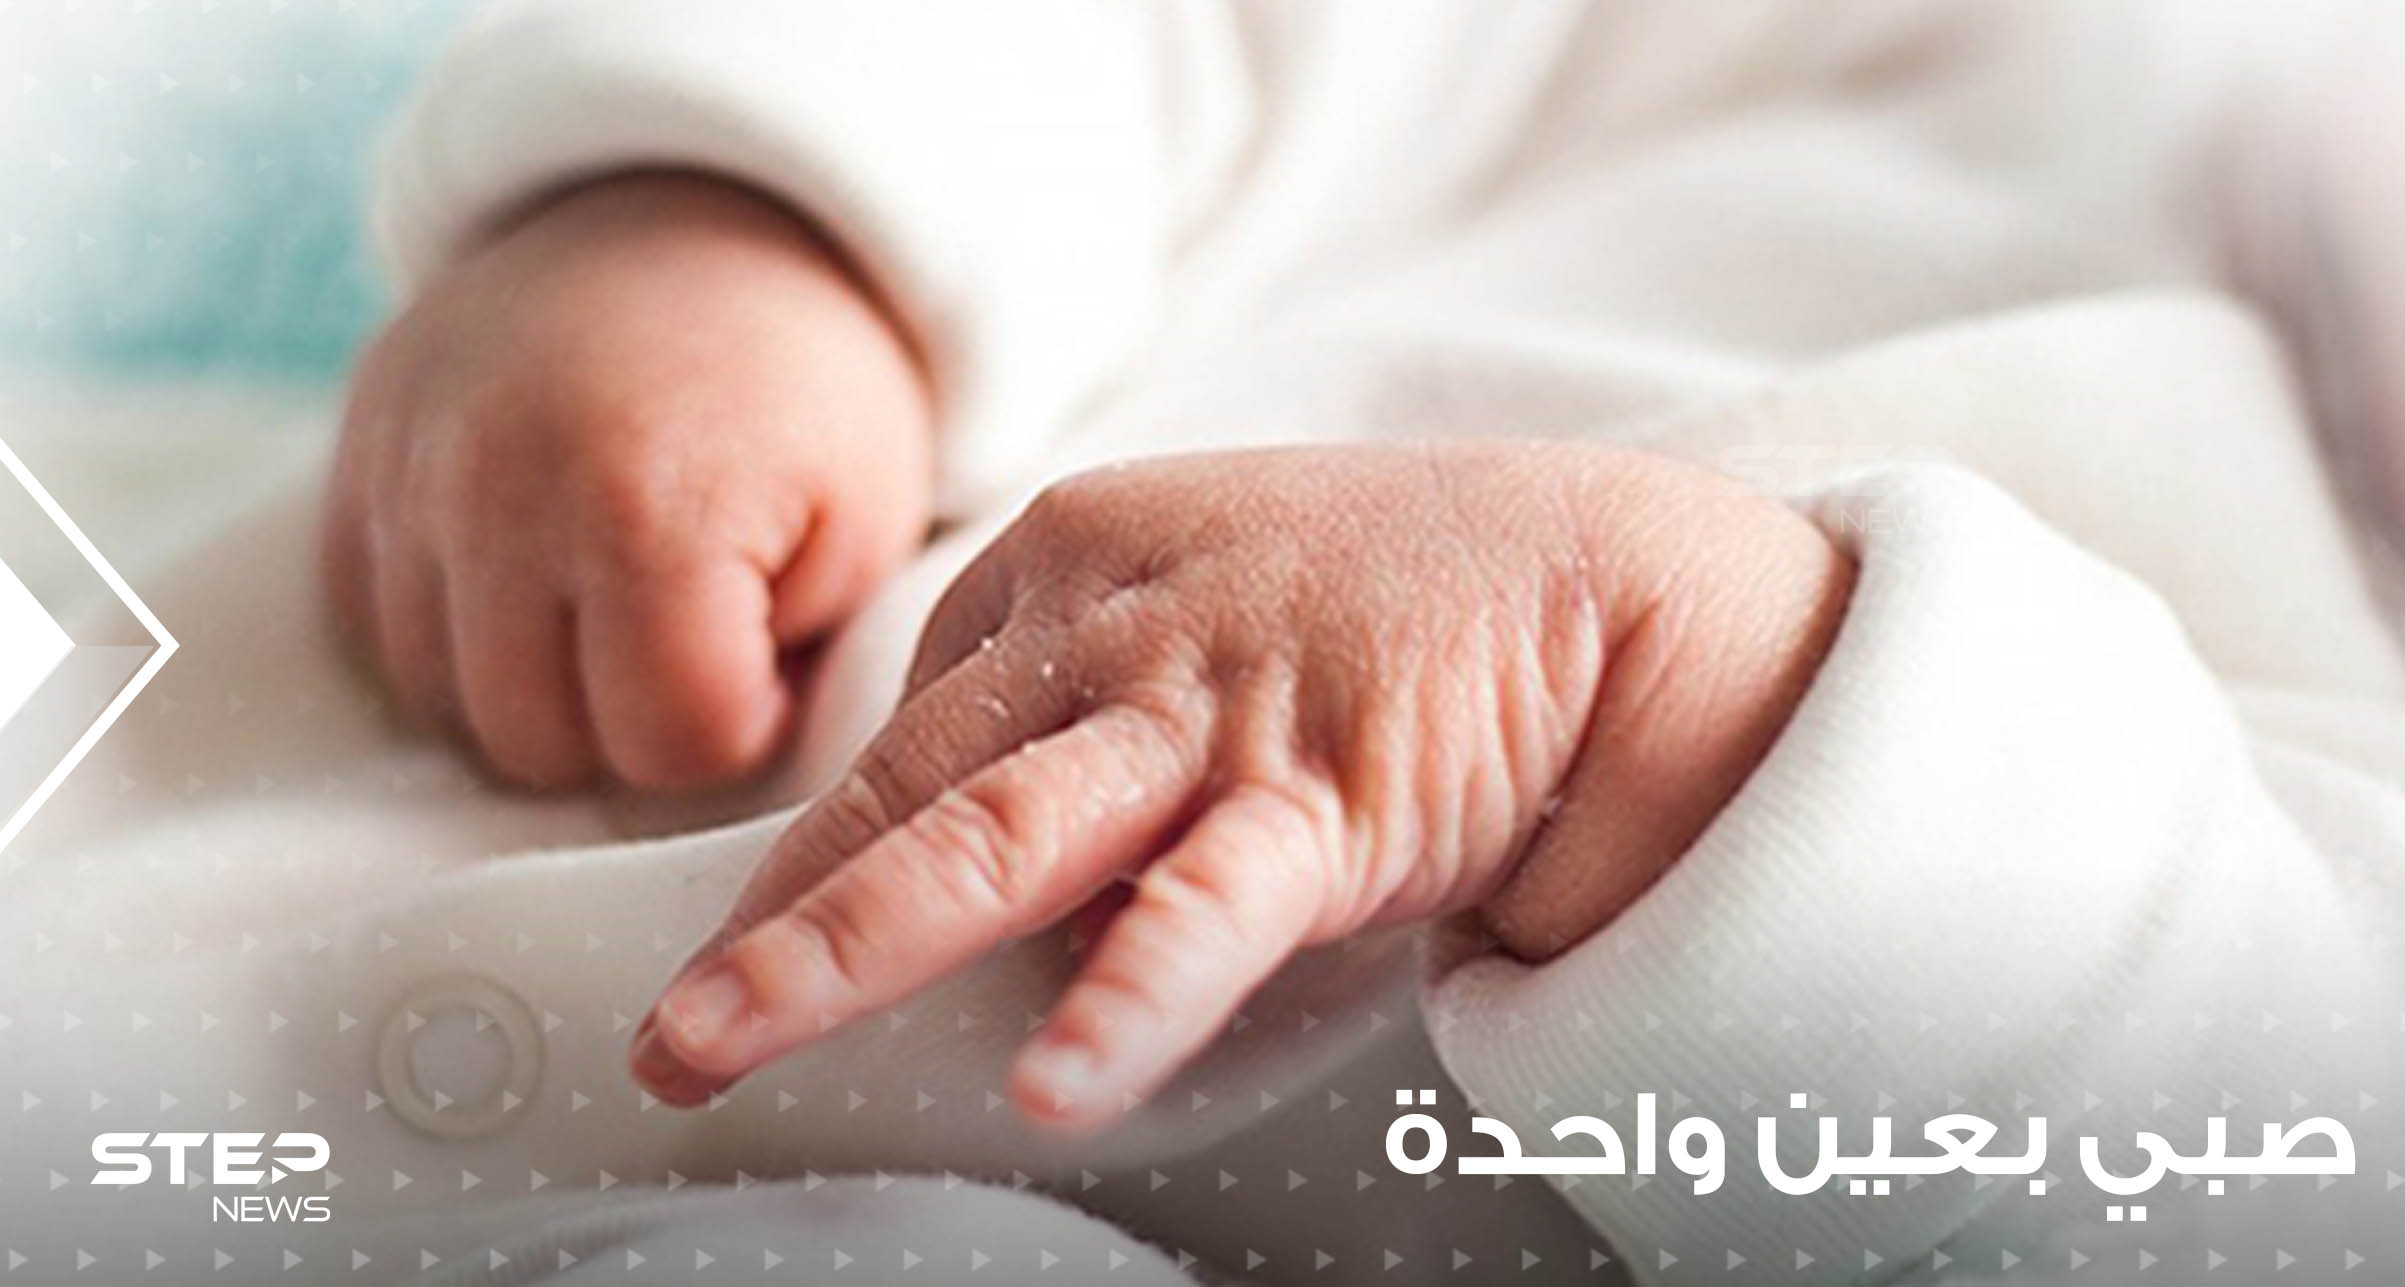 شاهد|| بحالة غريبة.. مدينة عربية تشهد ولادة نادرة لصبي بعين واحدة